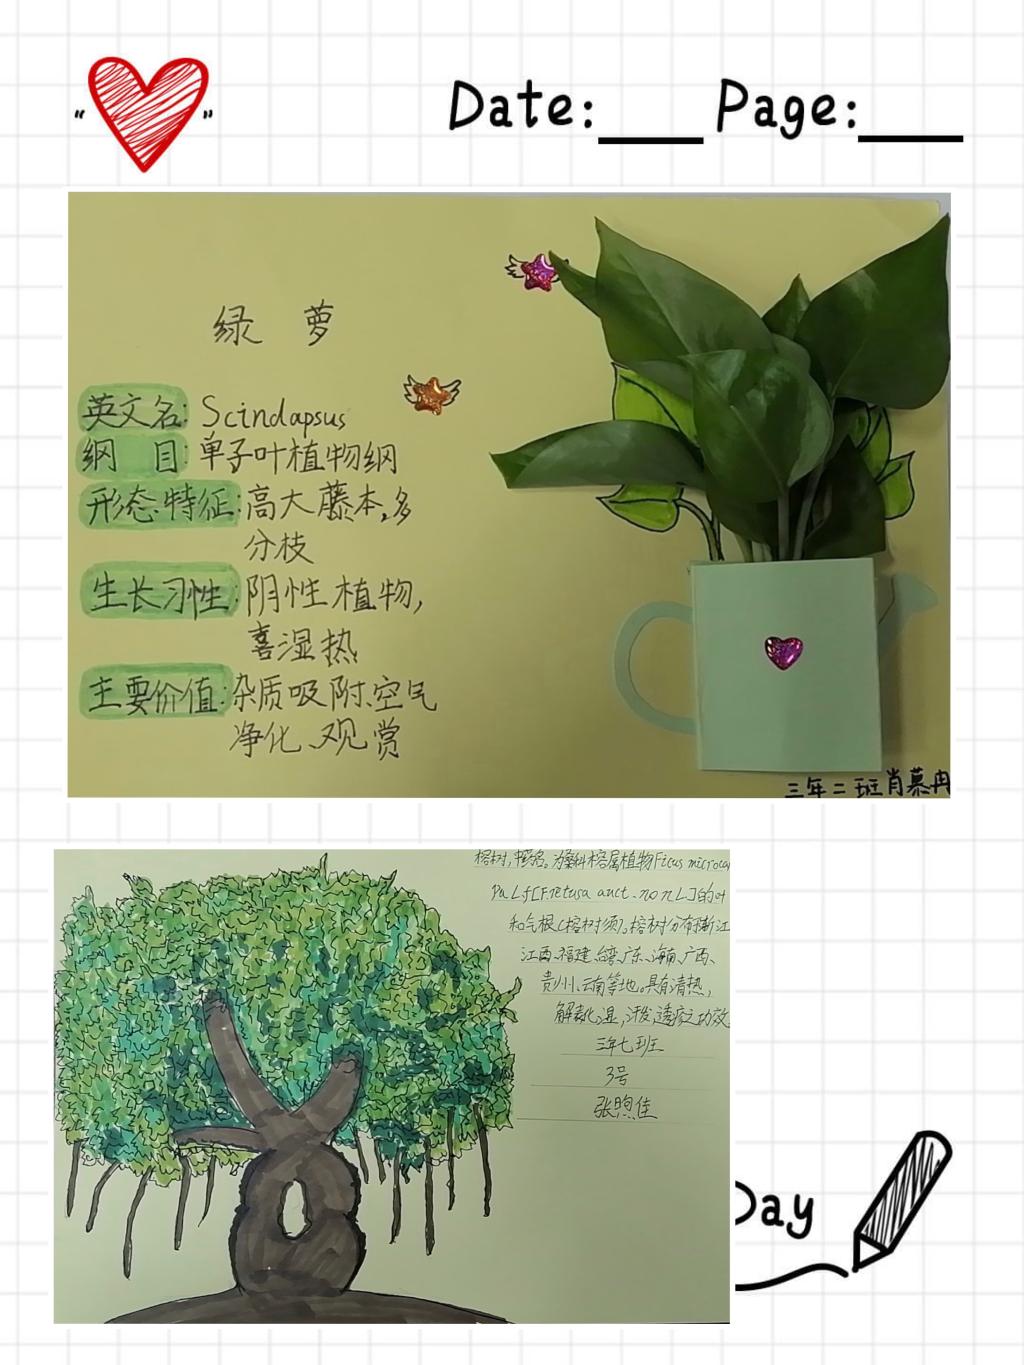 下面,让我们来看看同学们做的植物名片吧!